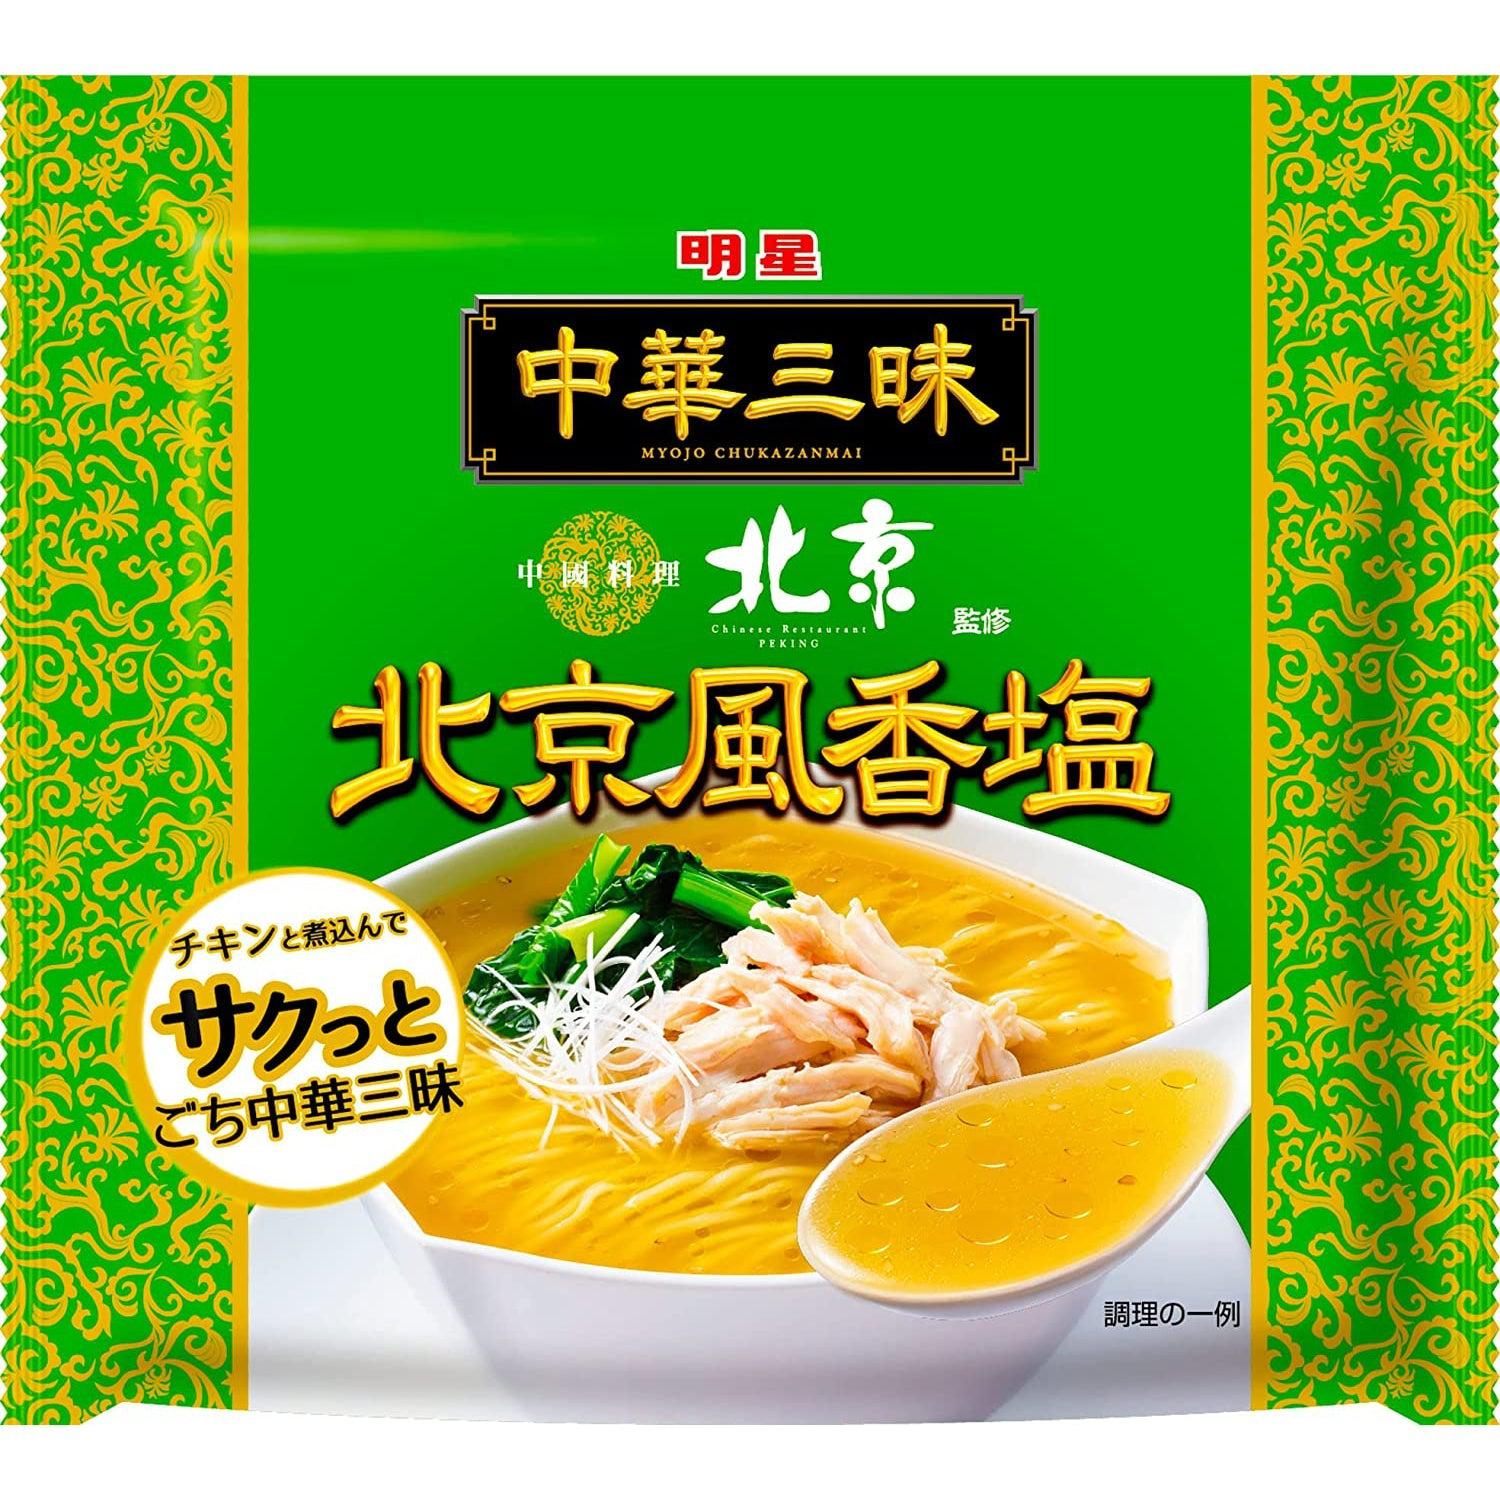 Myojo Ippeichan Chukazanmai Beijing Style Shio Ramen Instant Noodles 103g (Pack of 3), Japanese Taste